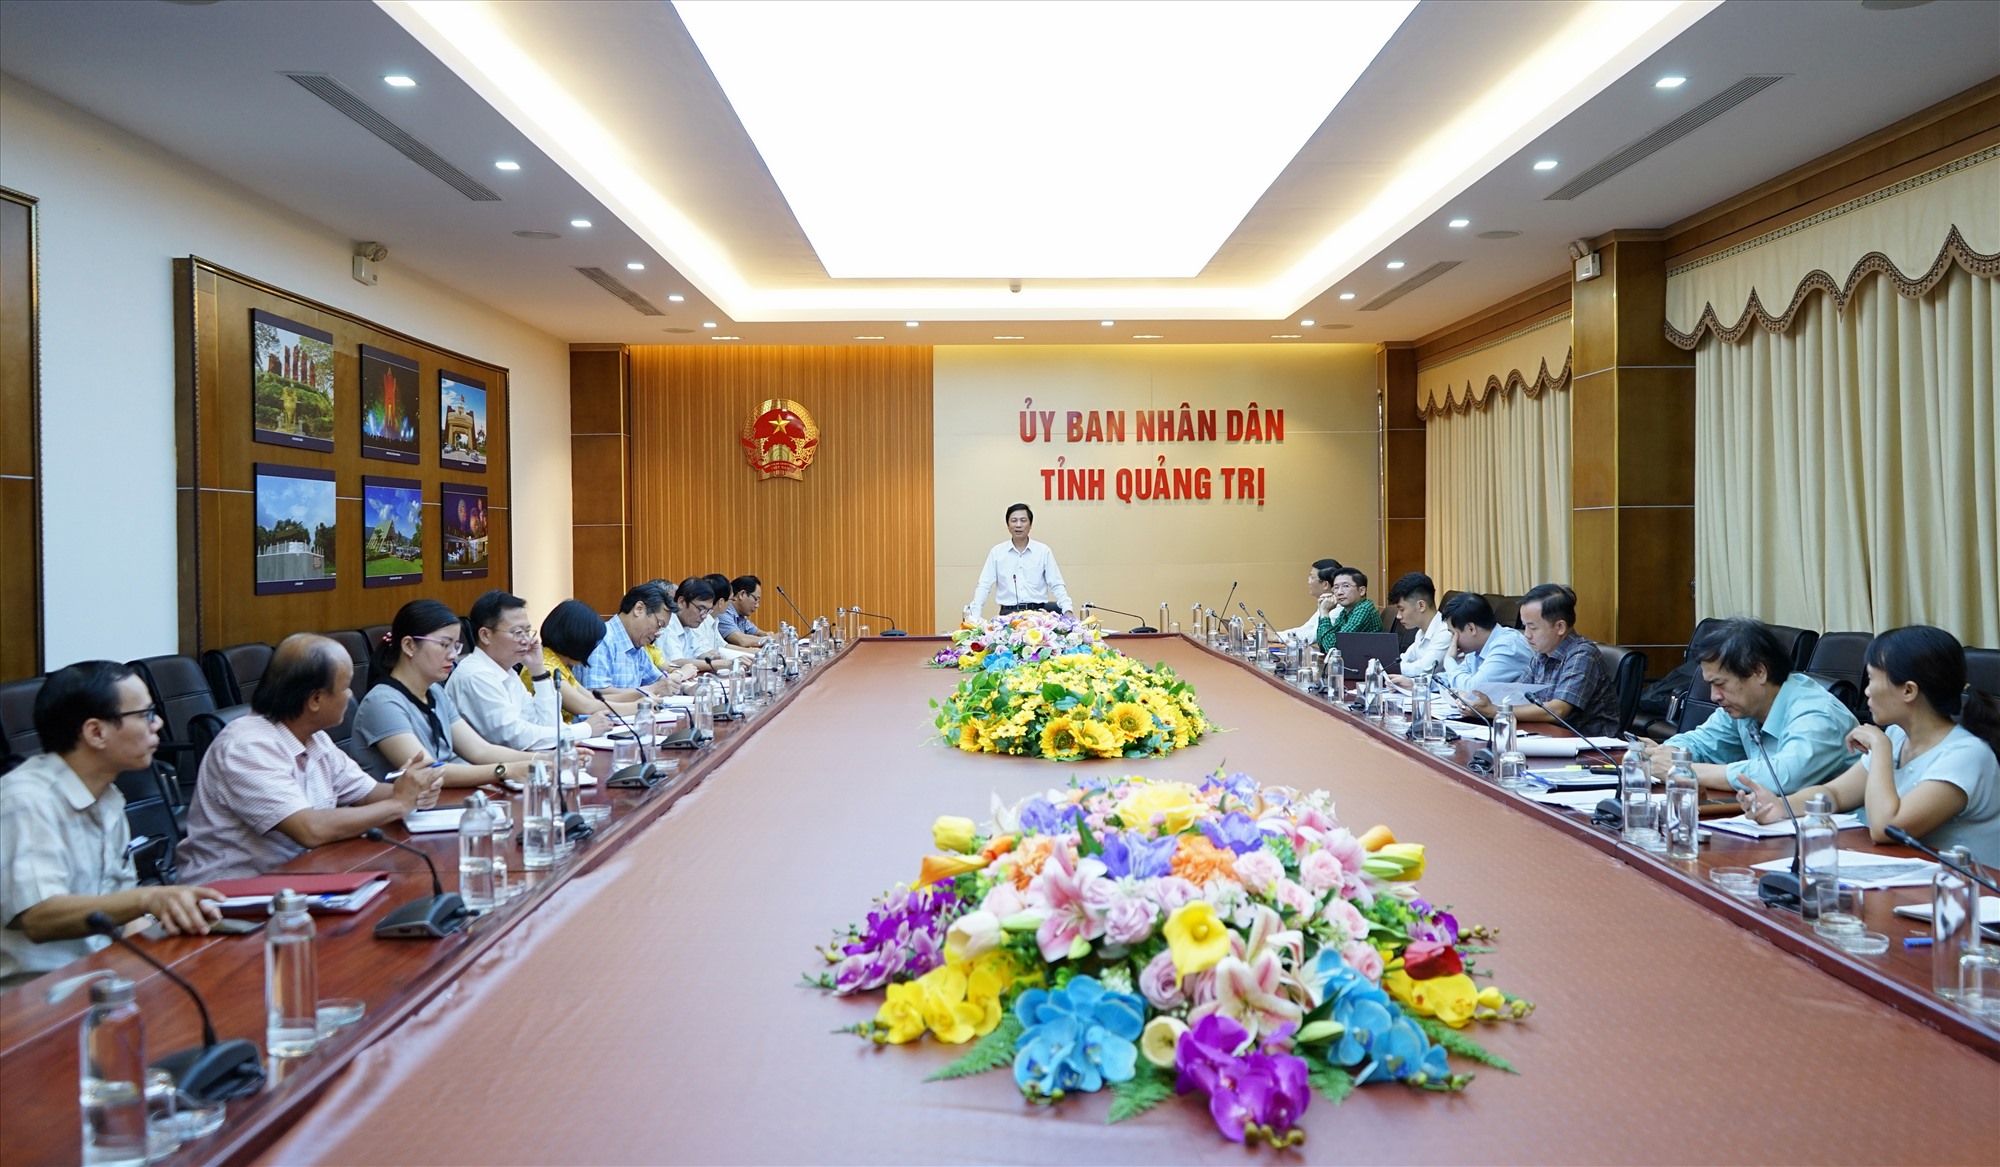 Phó Chủ tịch UBND tỉnh Hoàng Nam phát biểu kết luận buổi làm việc